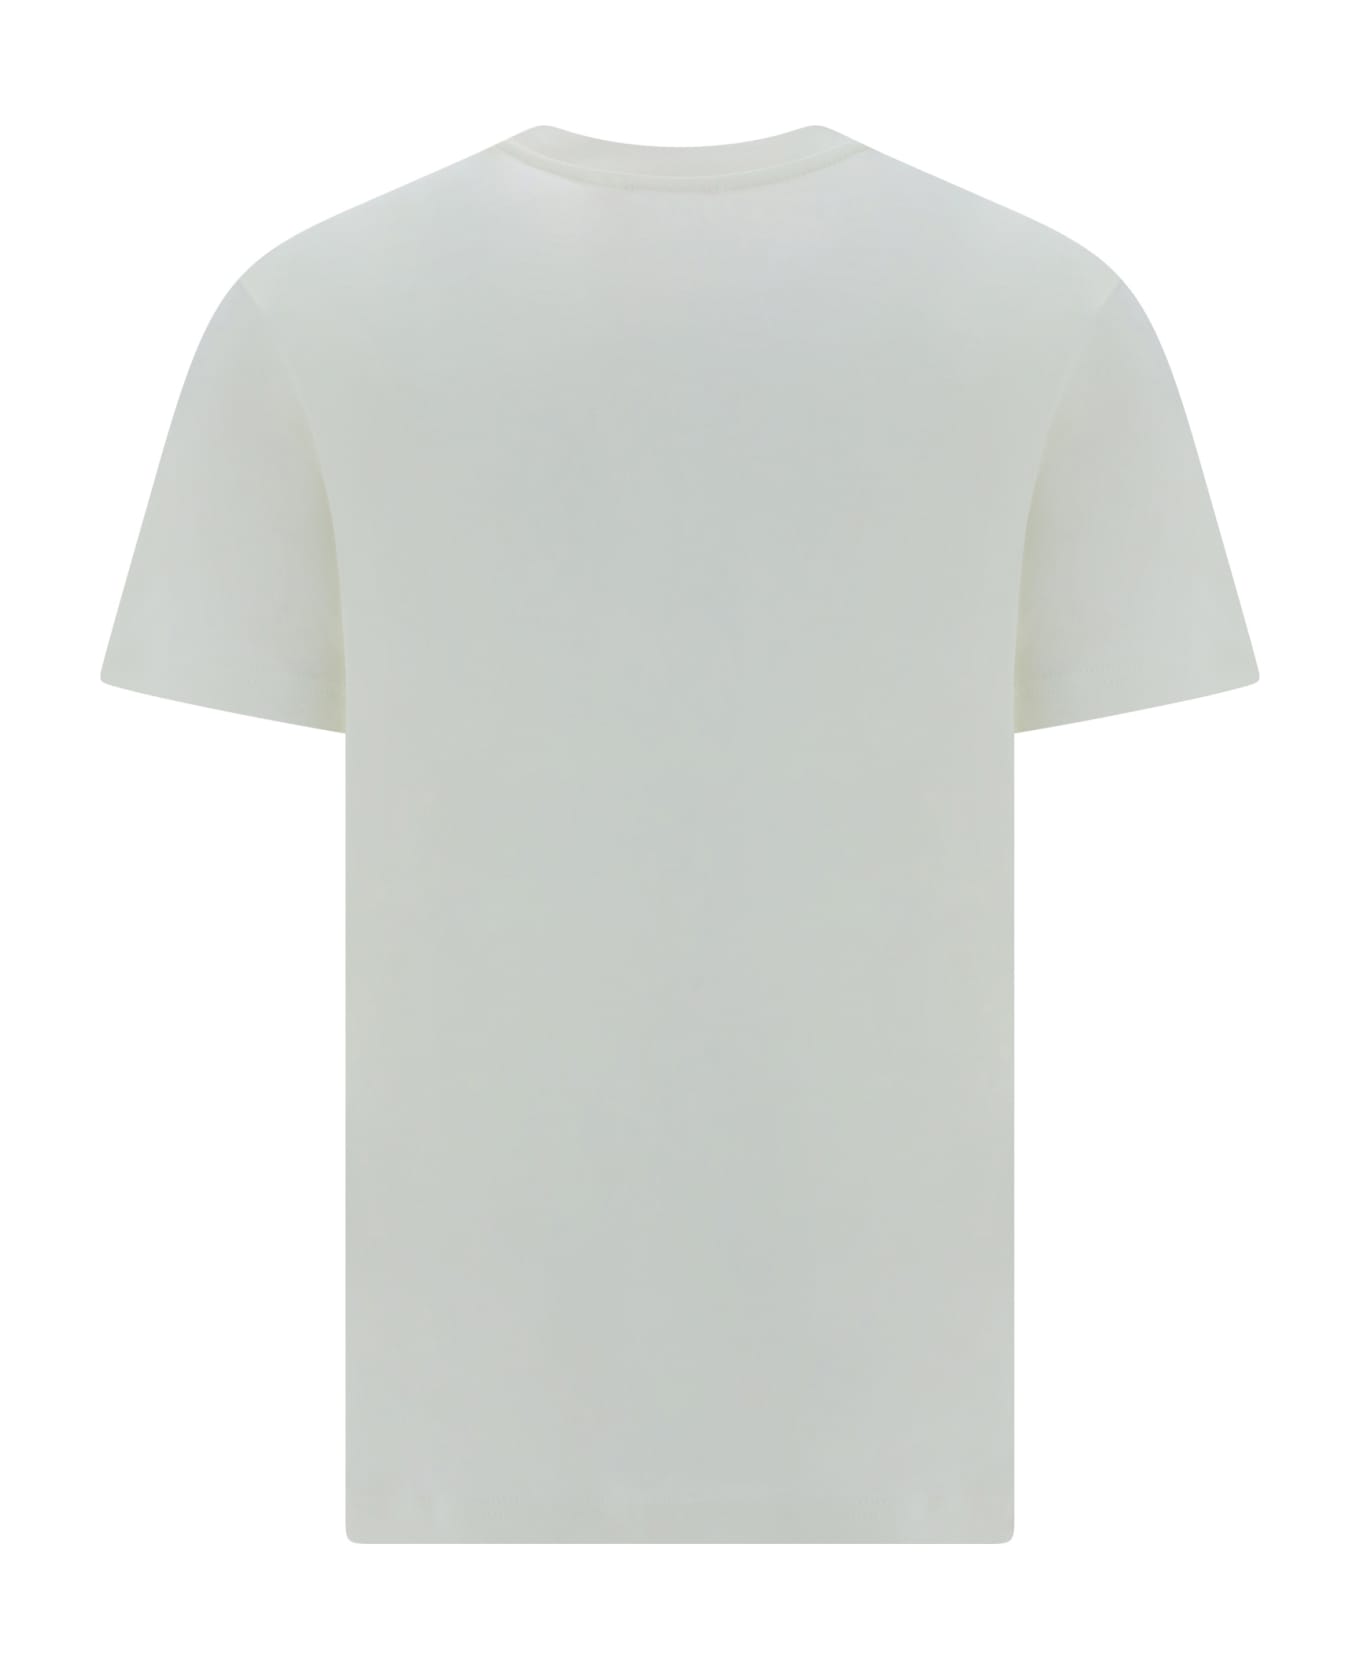 Diesel T-shirt - Off/white